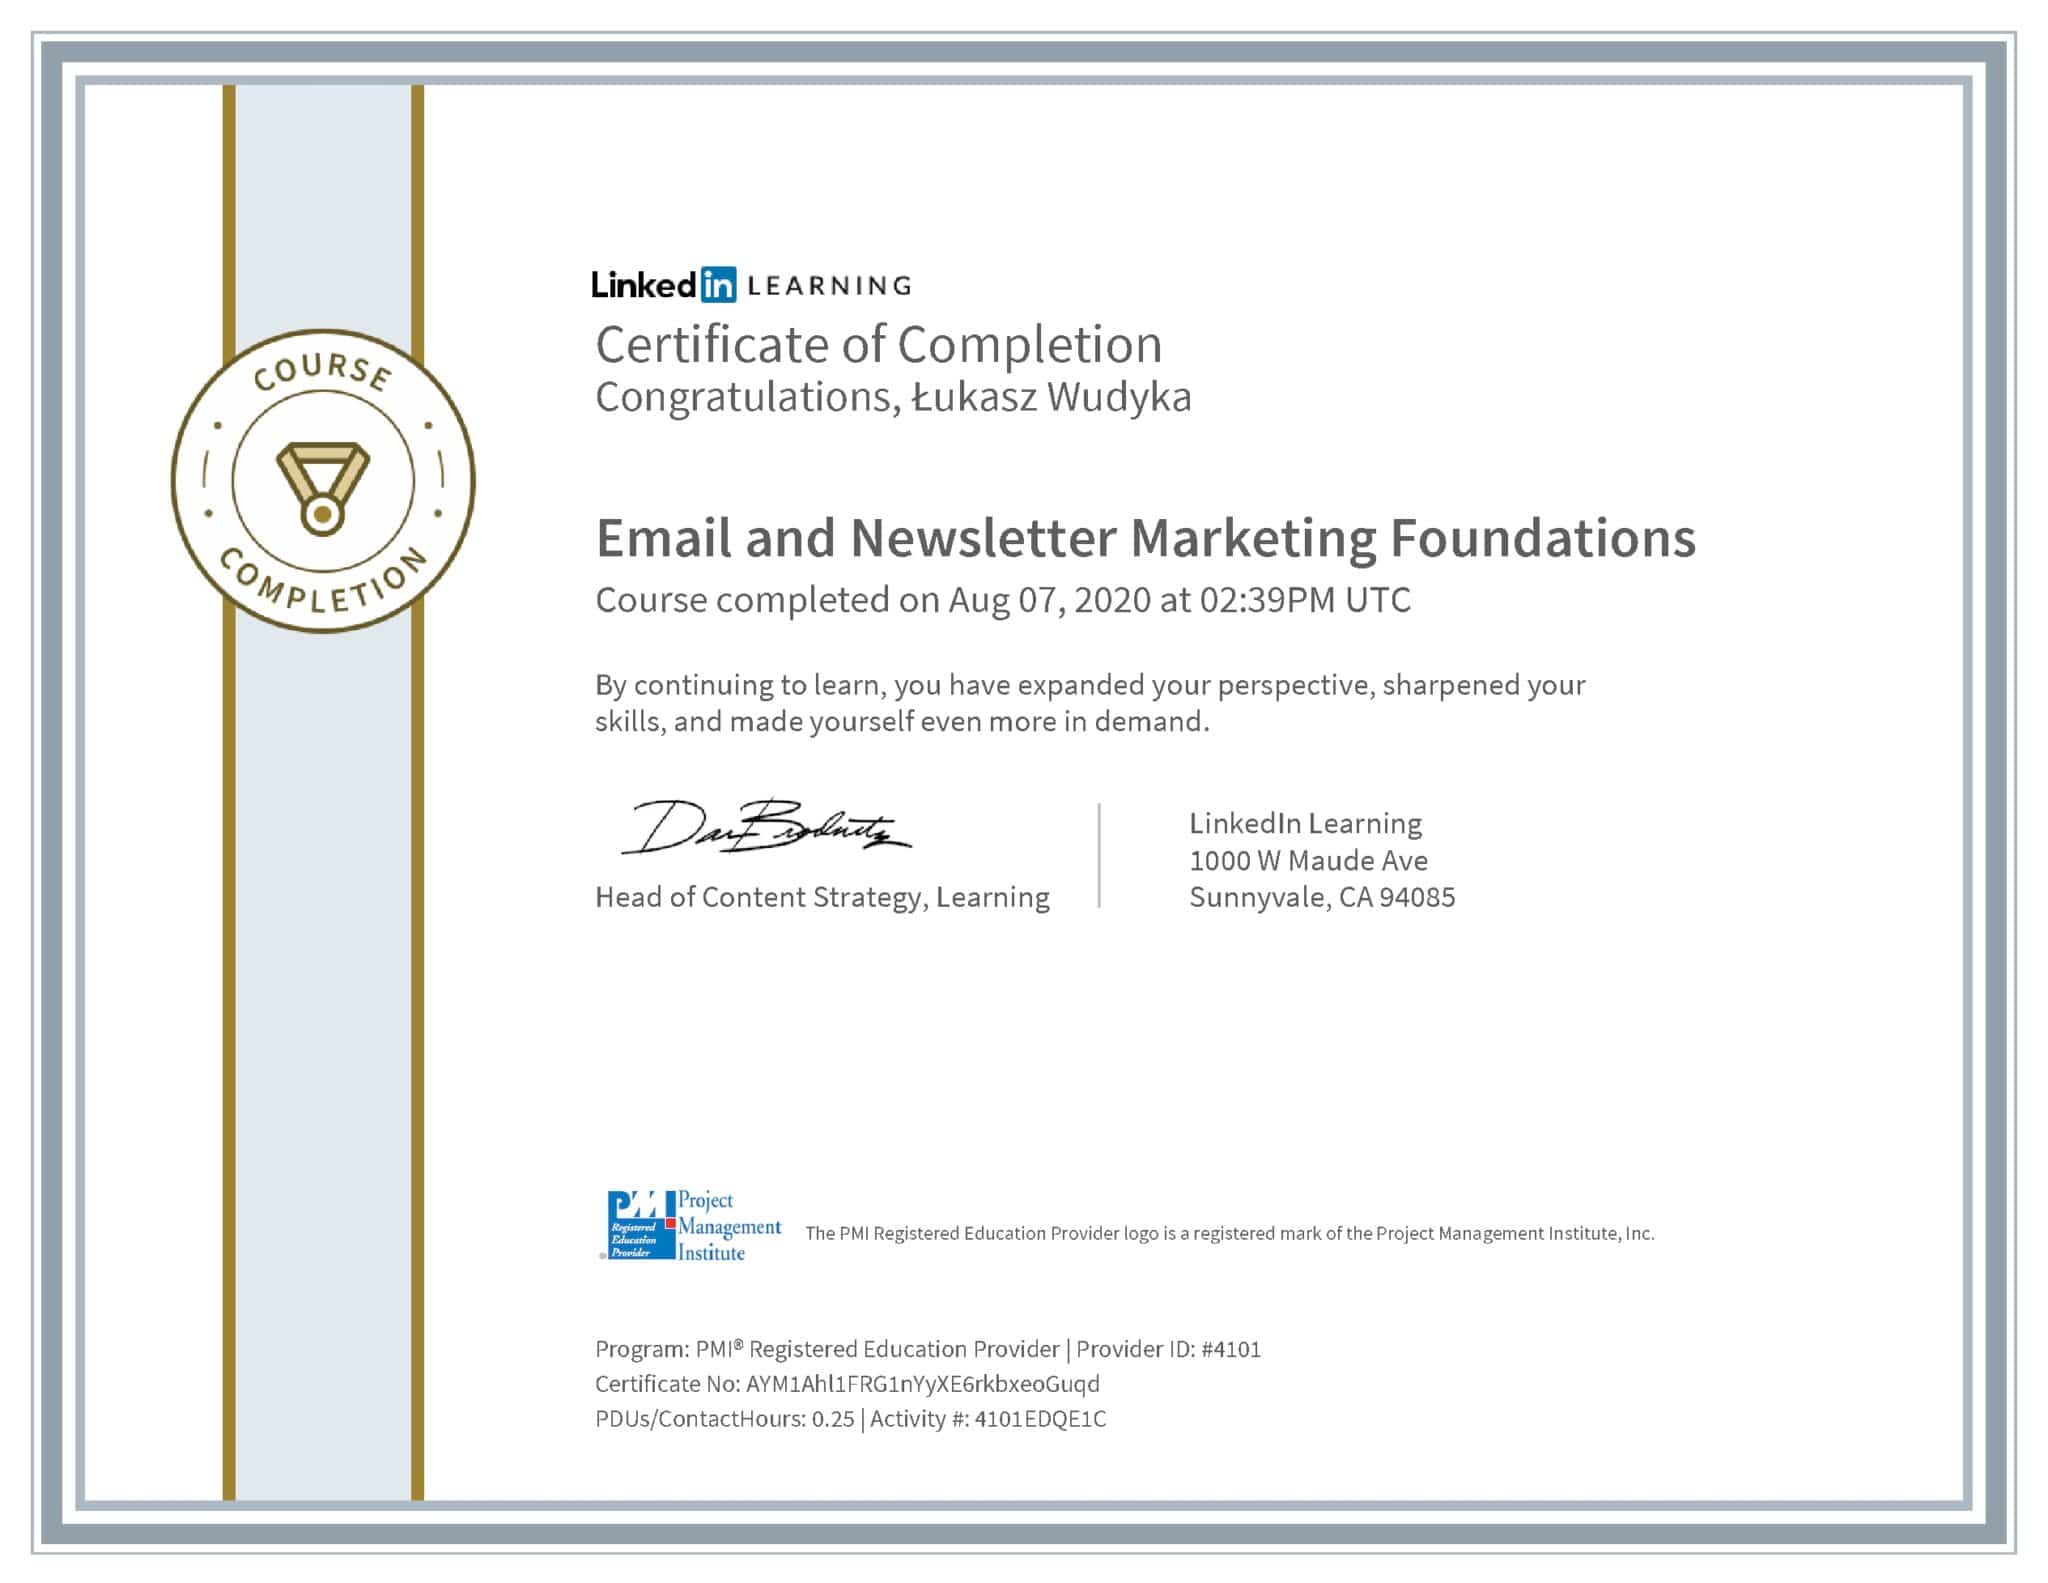 Łukasz Wudyka certyfikat LinkedIn Email and Newsletter Marketing Foundations PMI